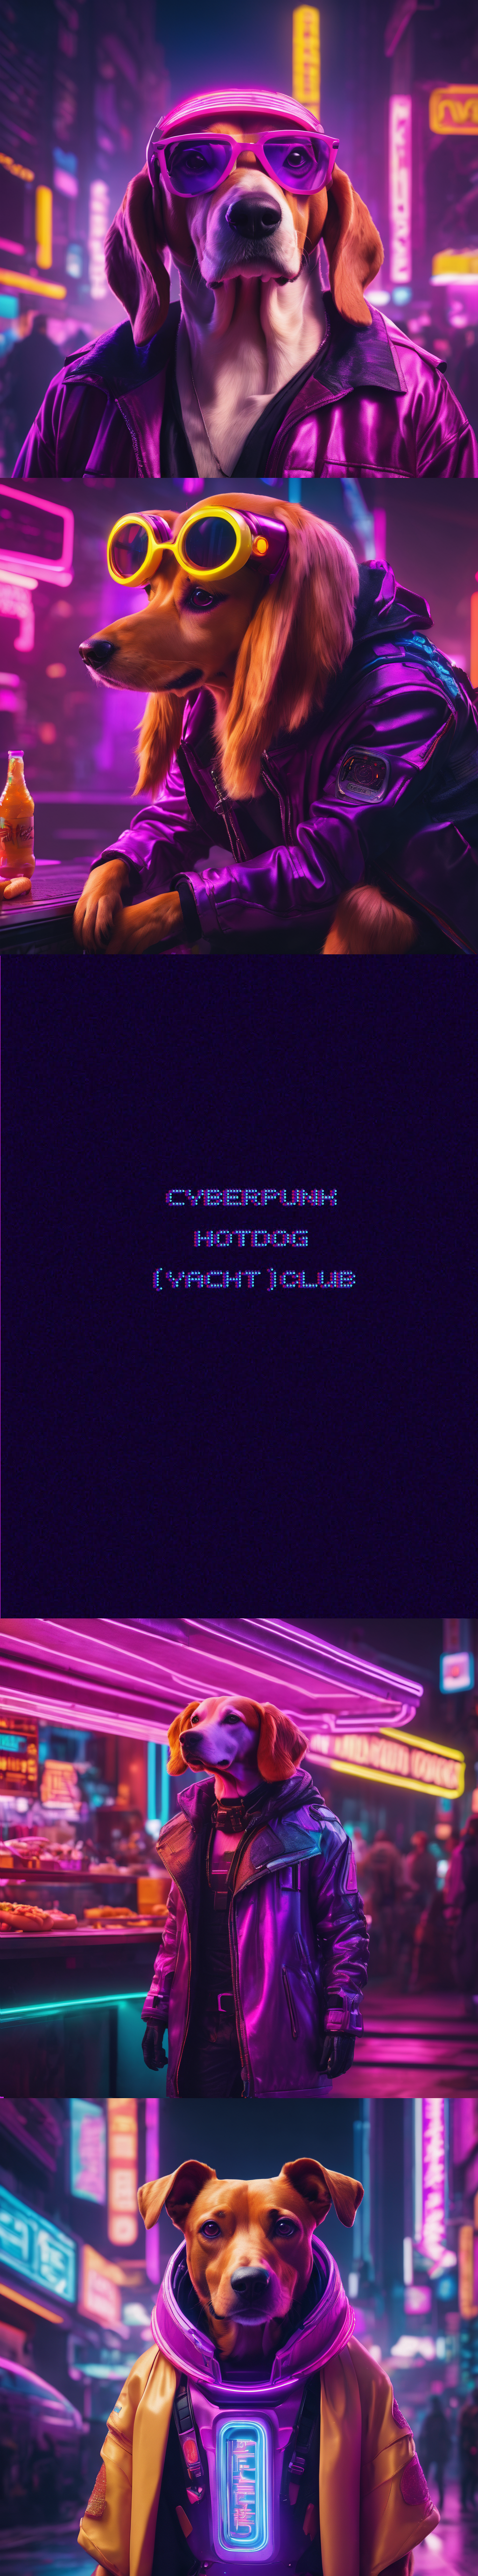 Cyberpunk Hotdog (YACHT) club